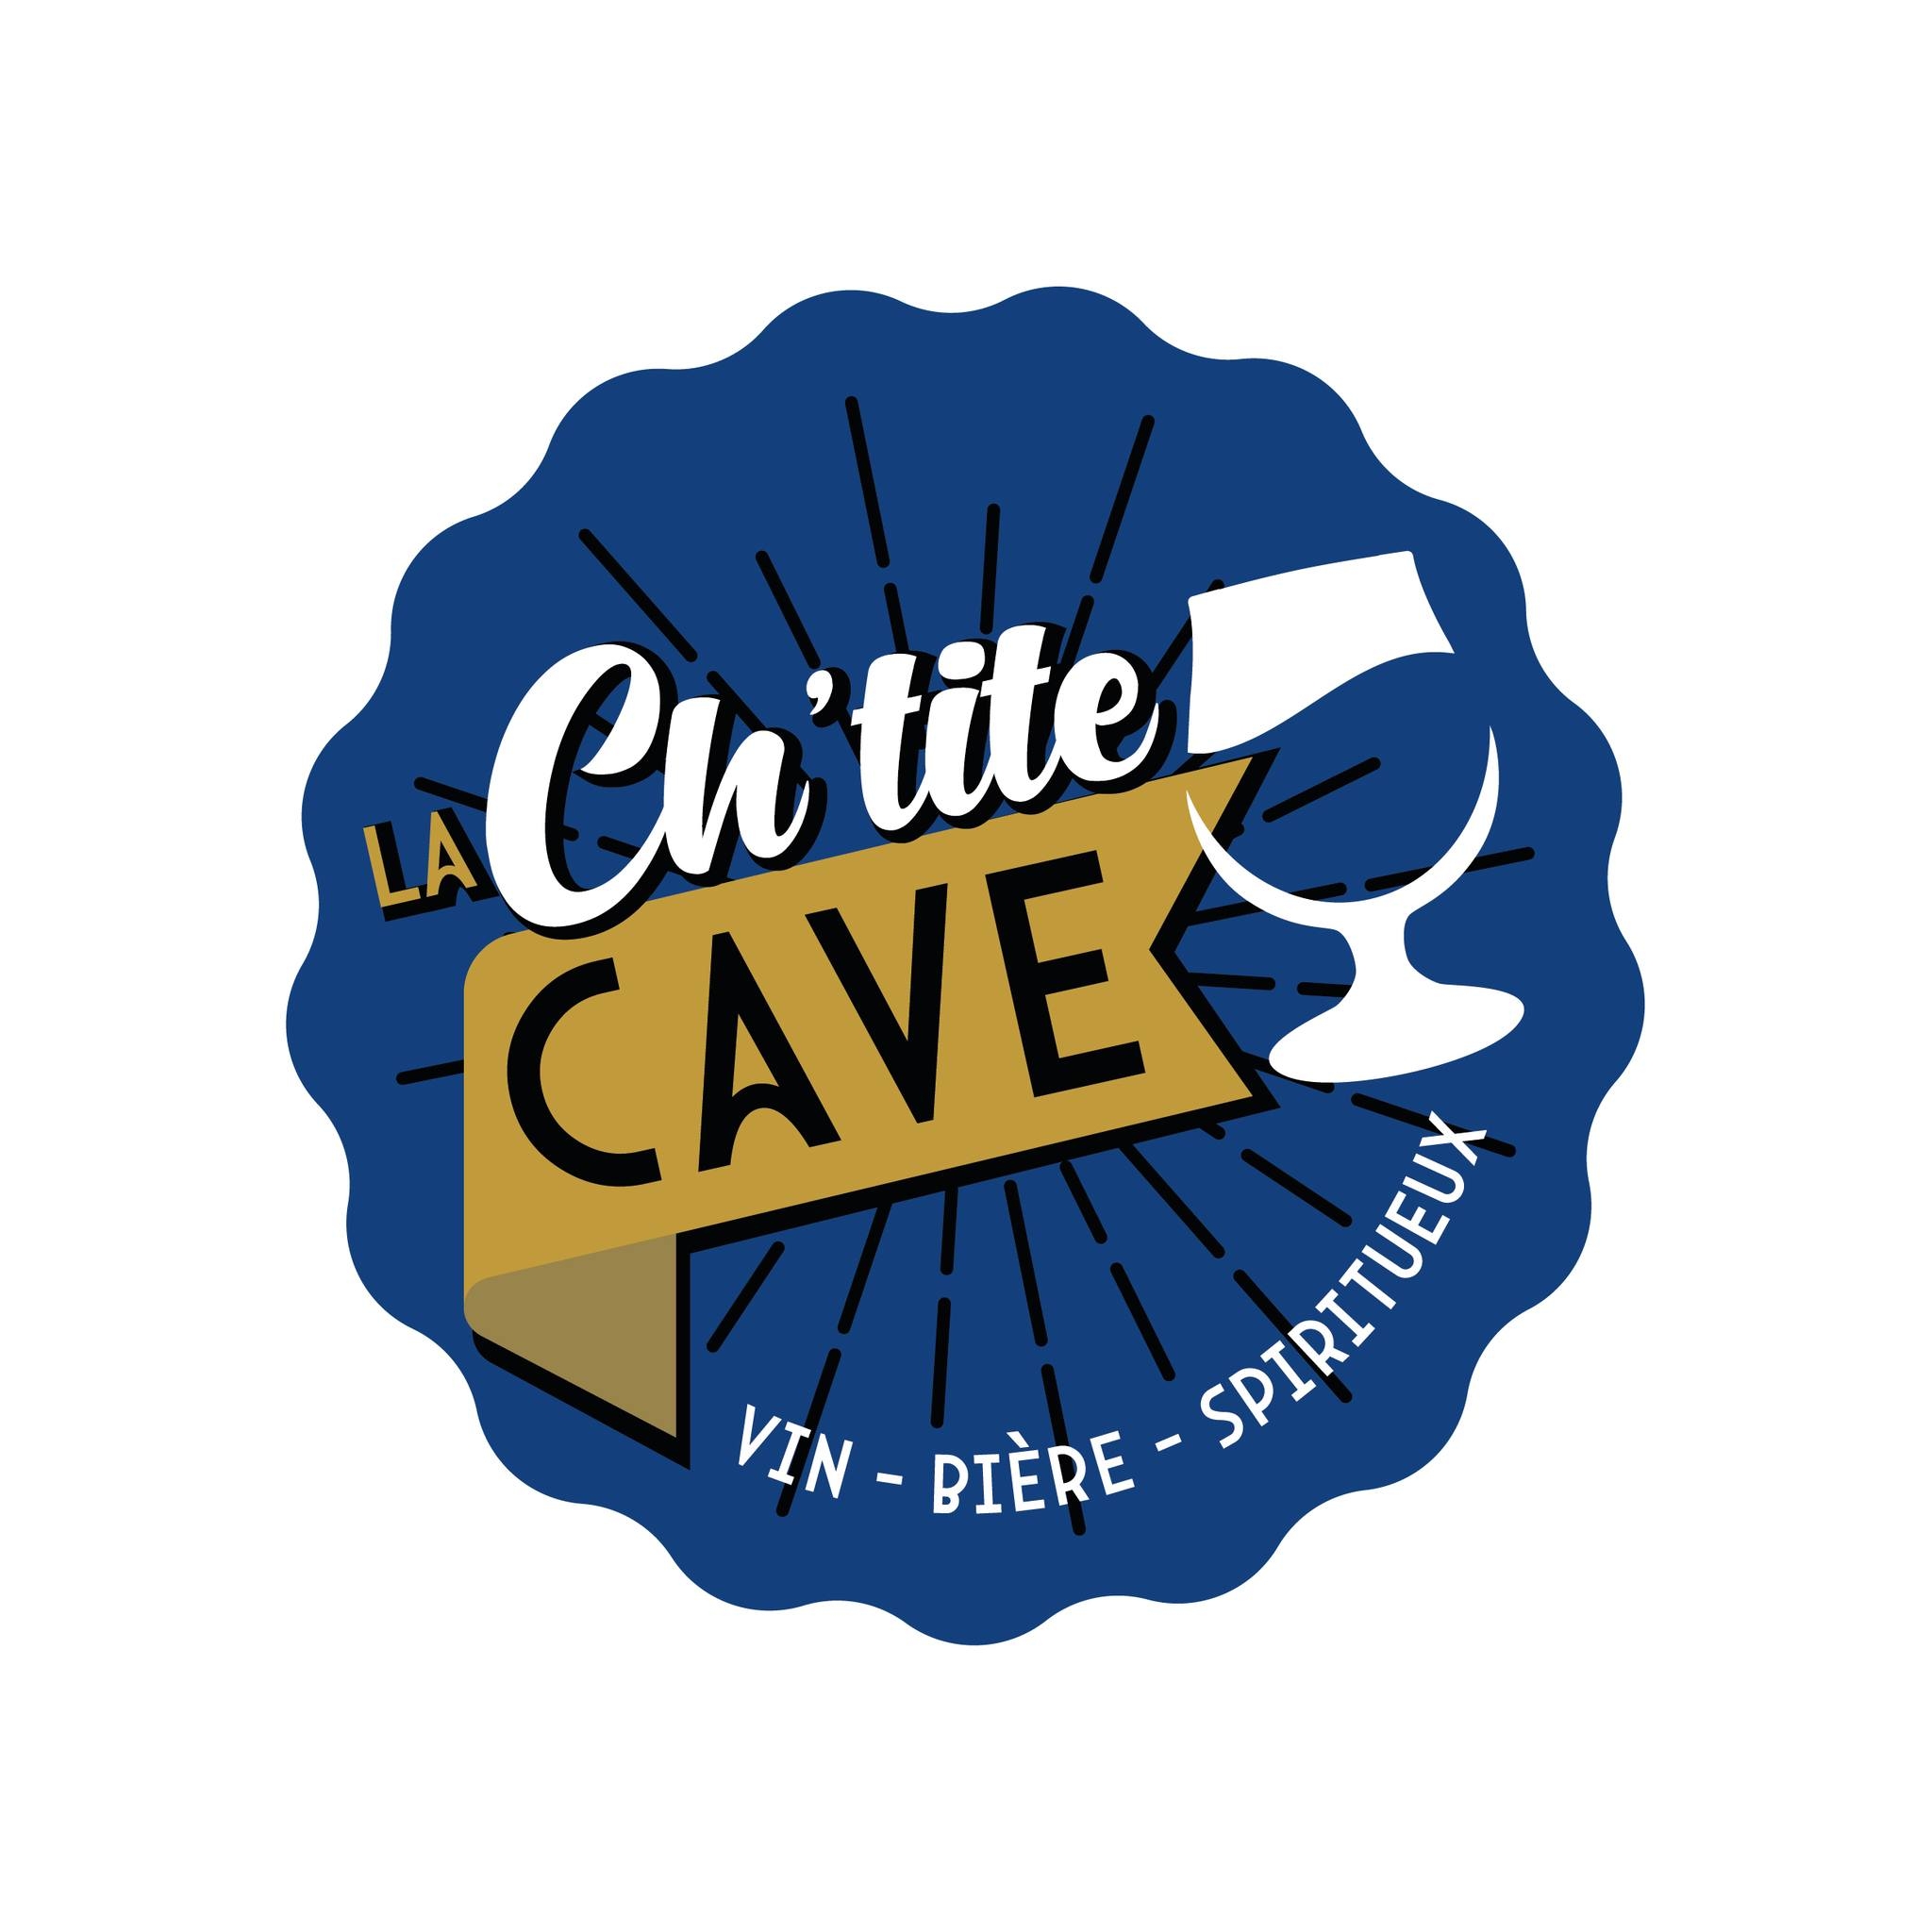 La Ch’tite Cave